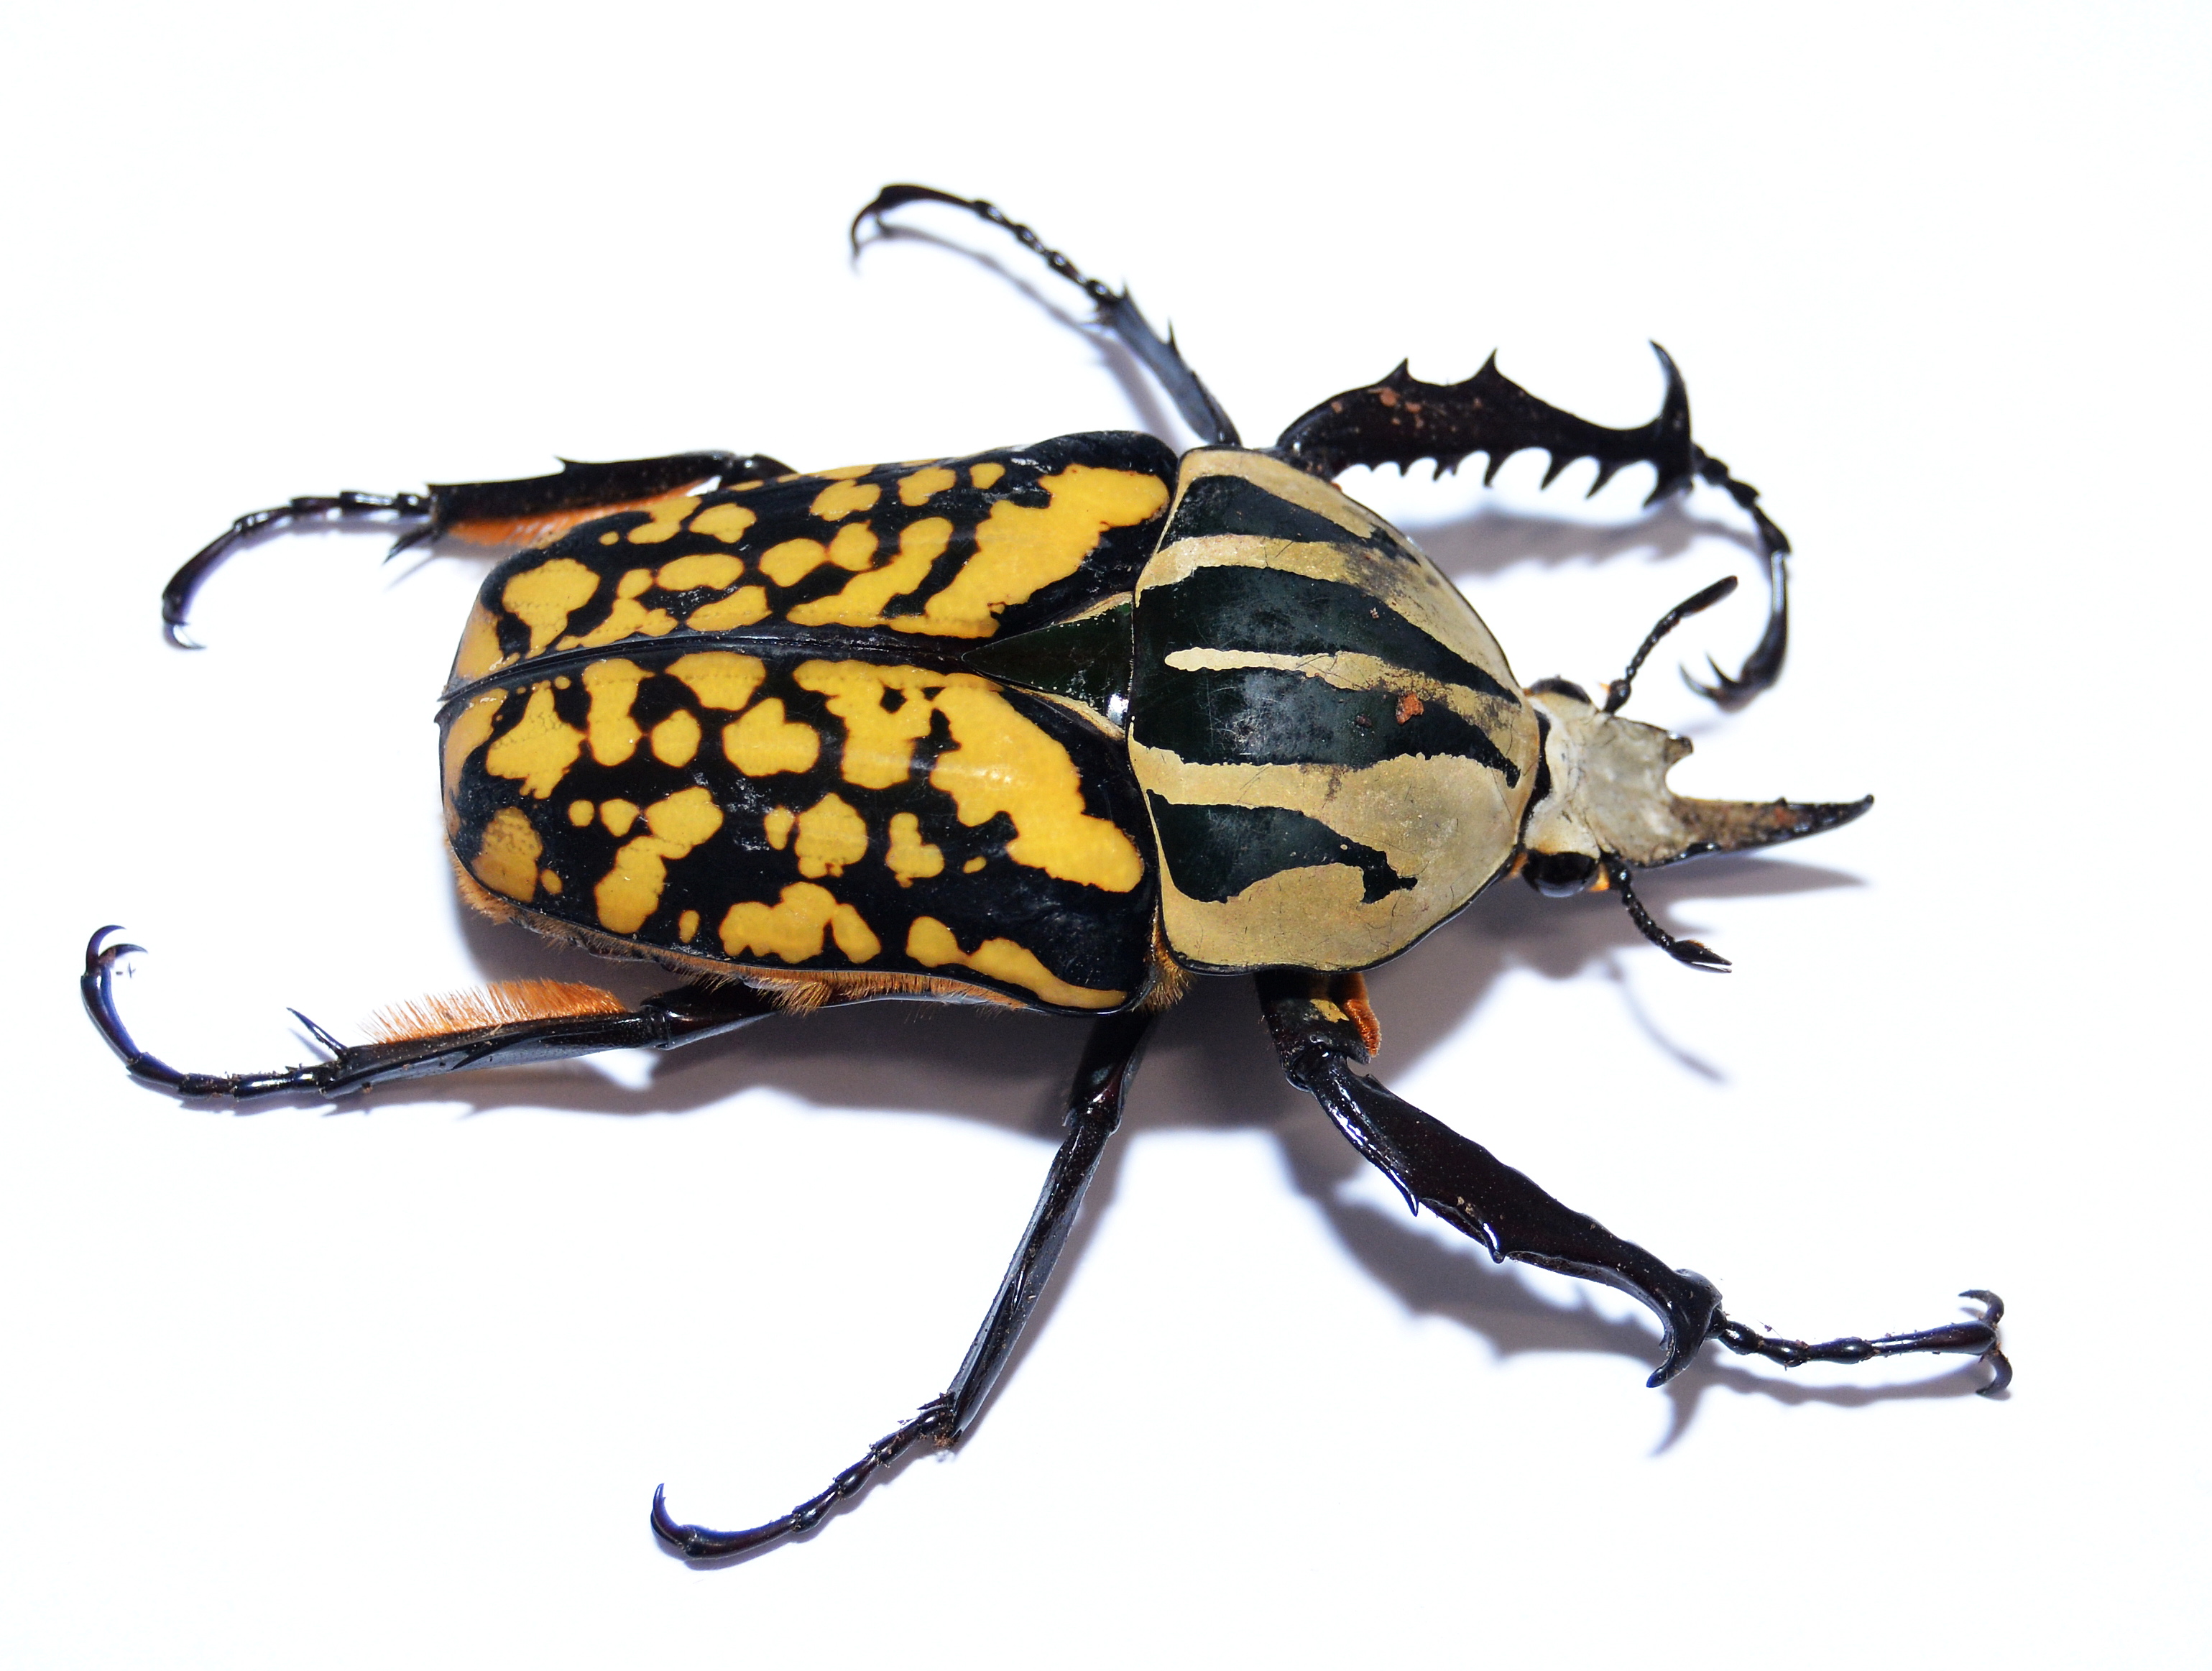 Käfer als Haustiere halten - Ein neuer Trend?